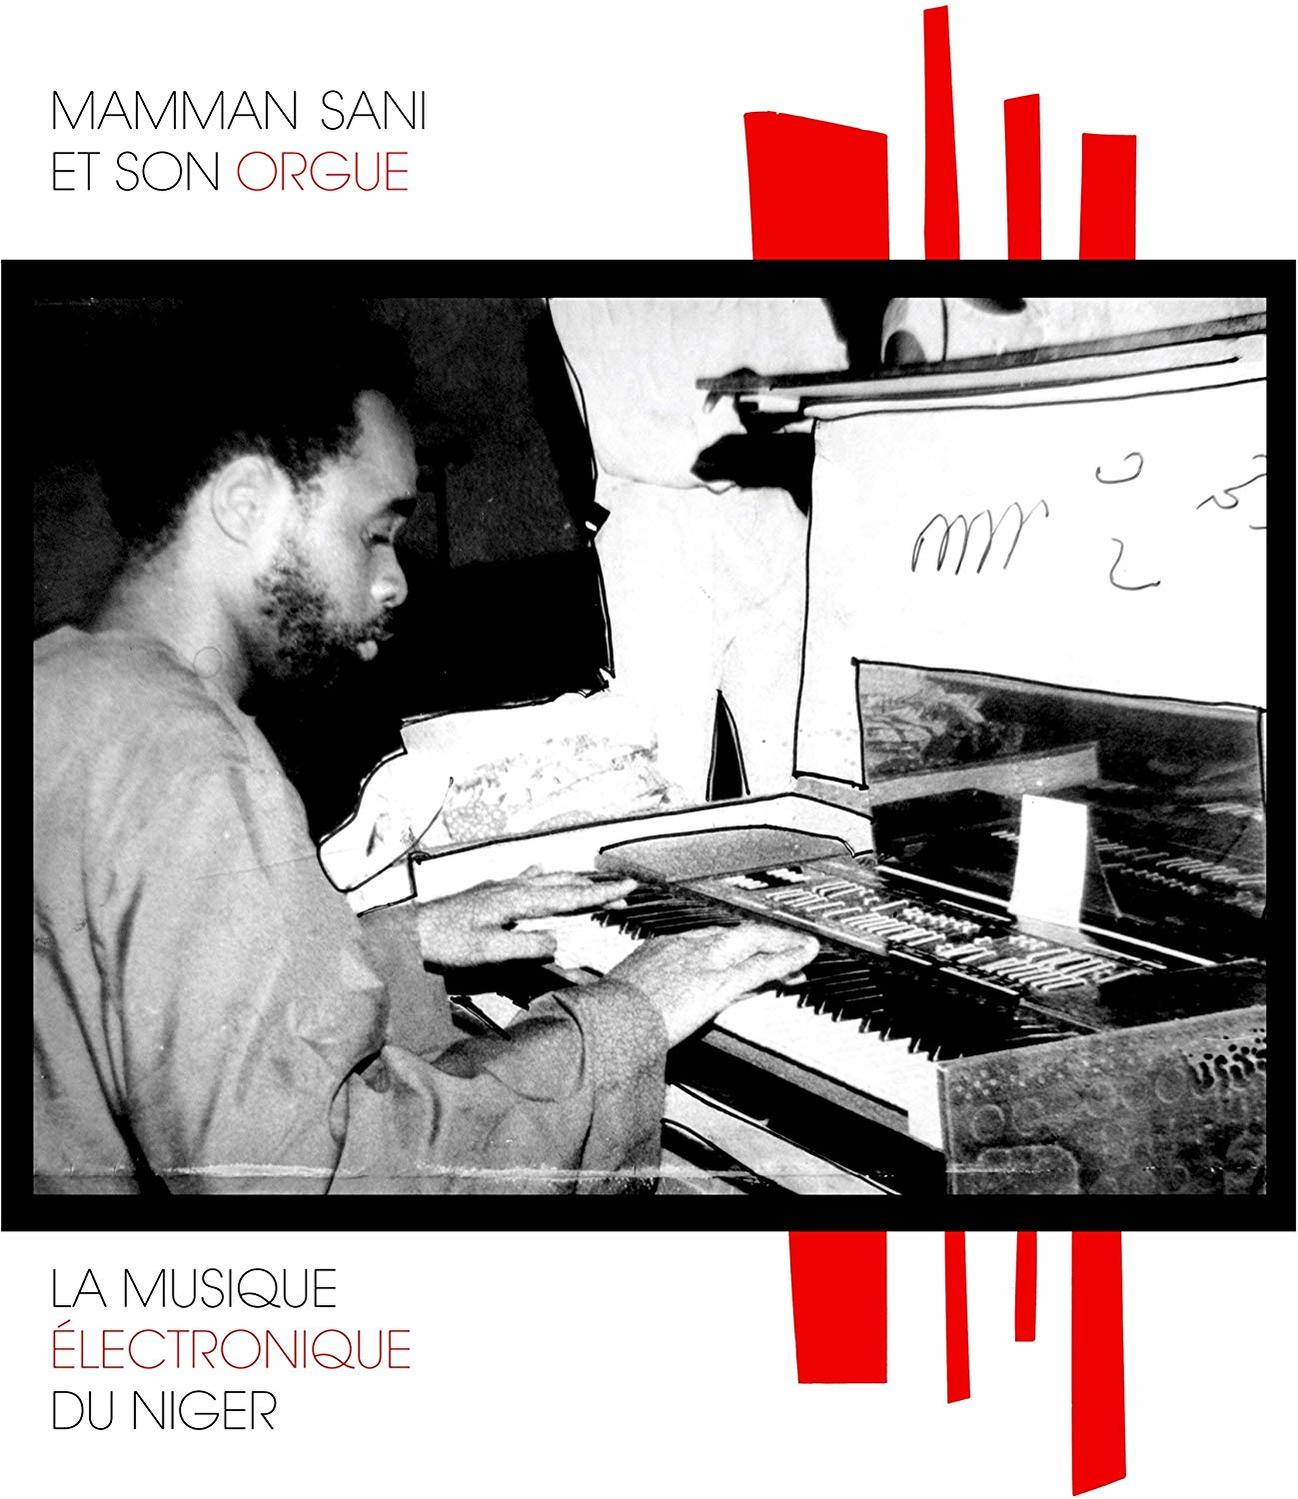 Sani ELECTRONIQUE DU - Mammane MUSIQUE NIGER LA - (Vinyl)